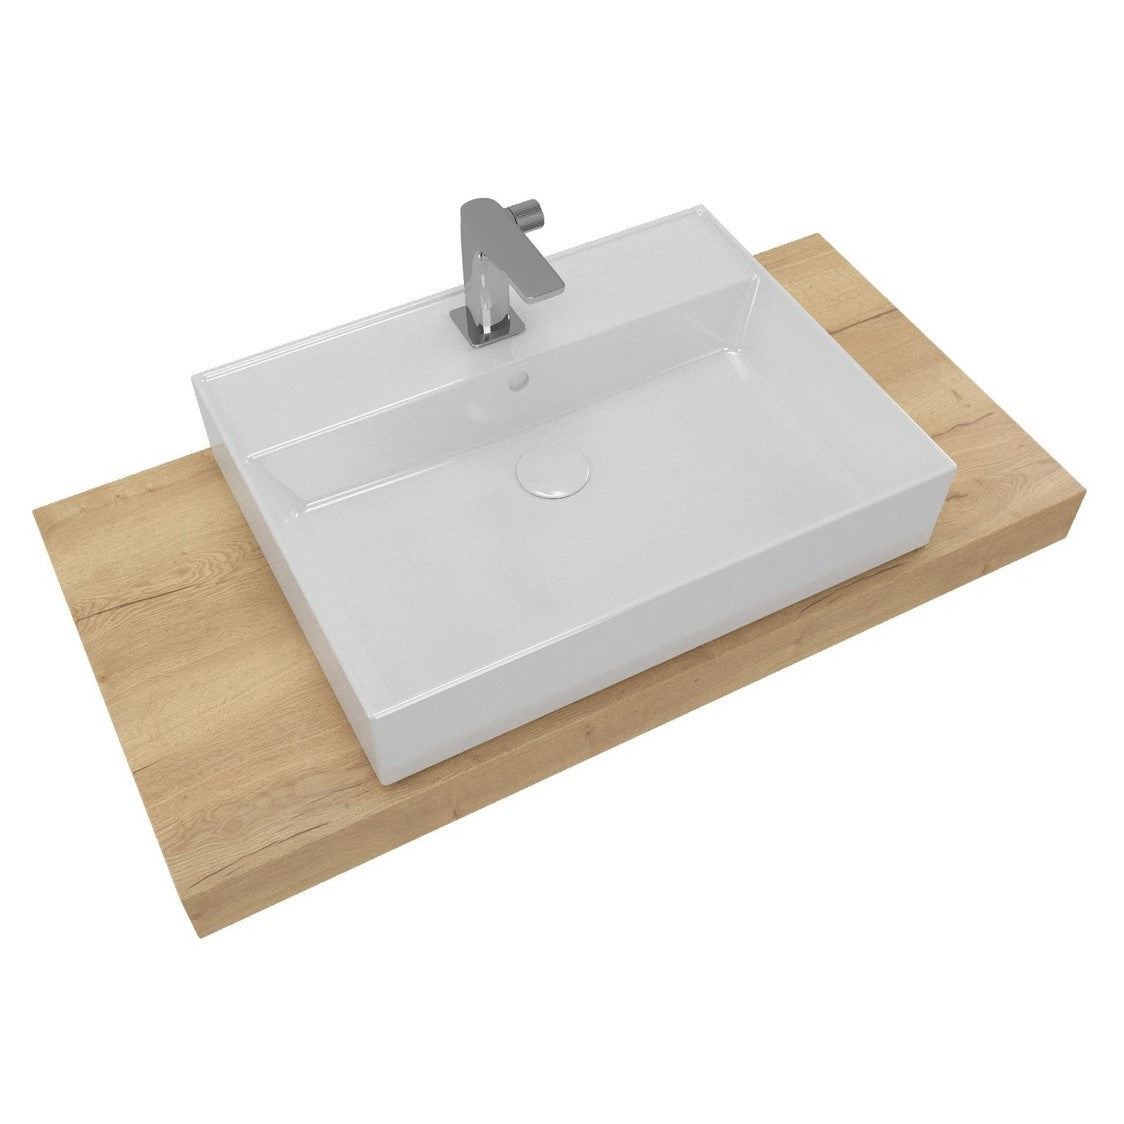 KSETDO11 SAT 100 x 50 cm kopalniški sestav s pultom za umivalnik